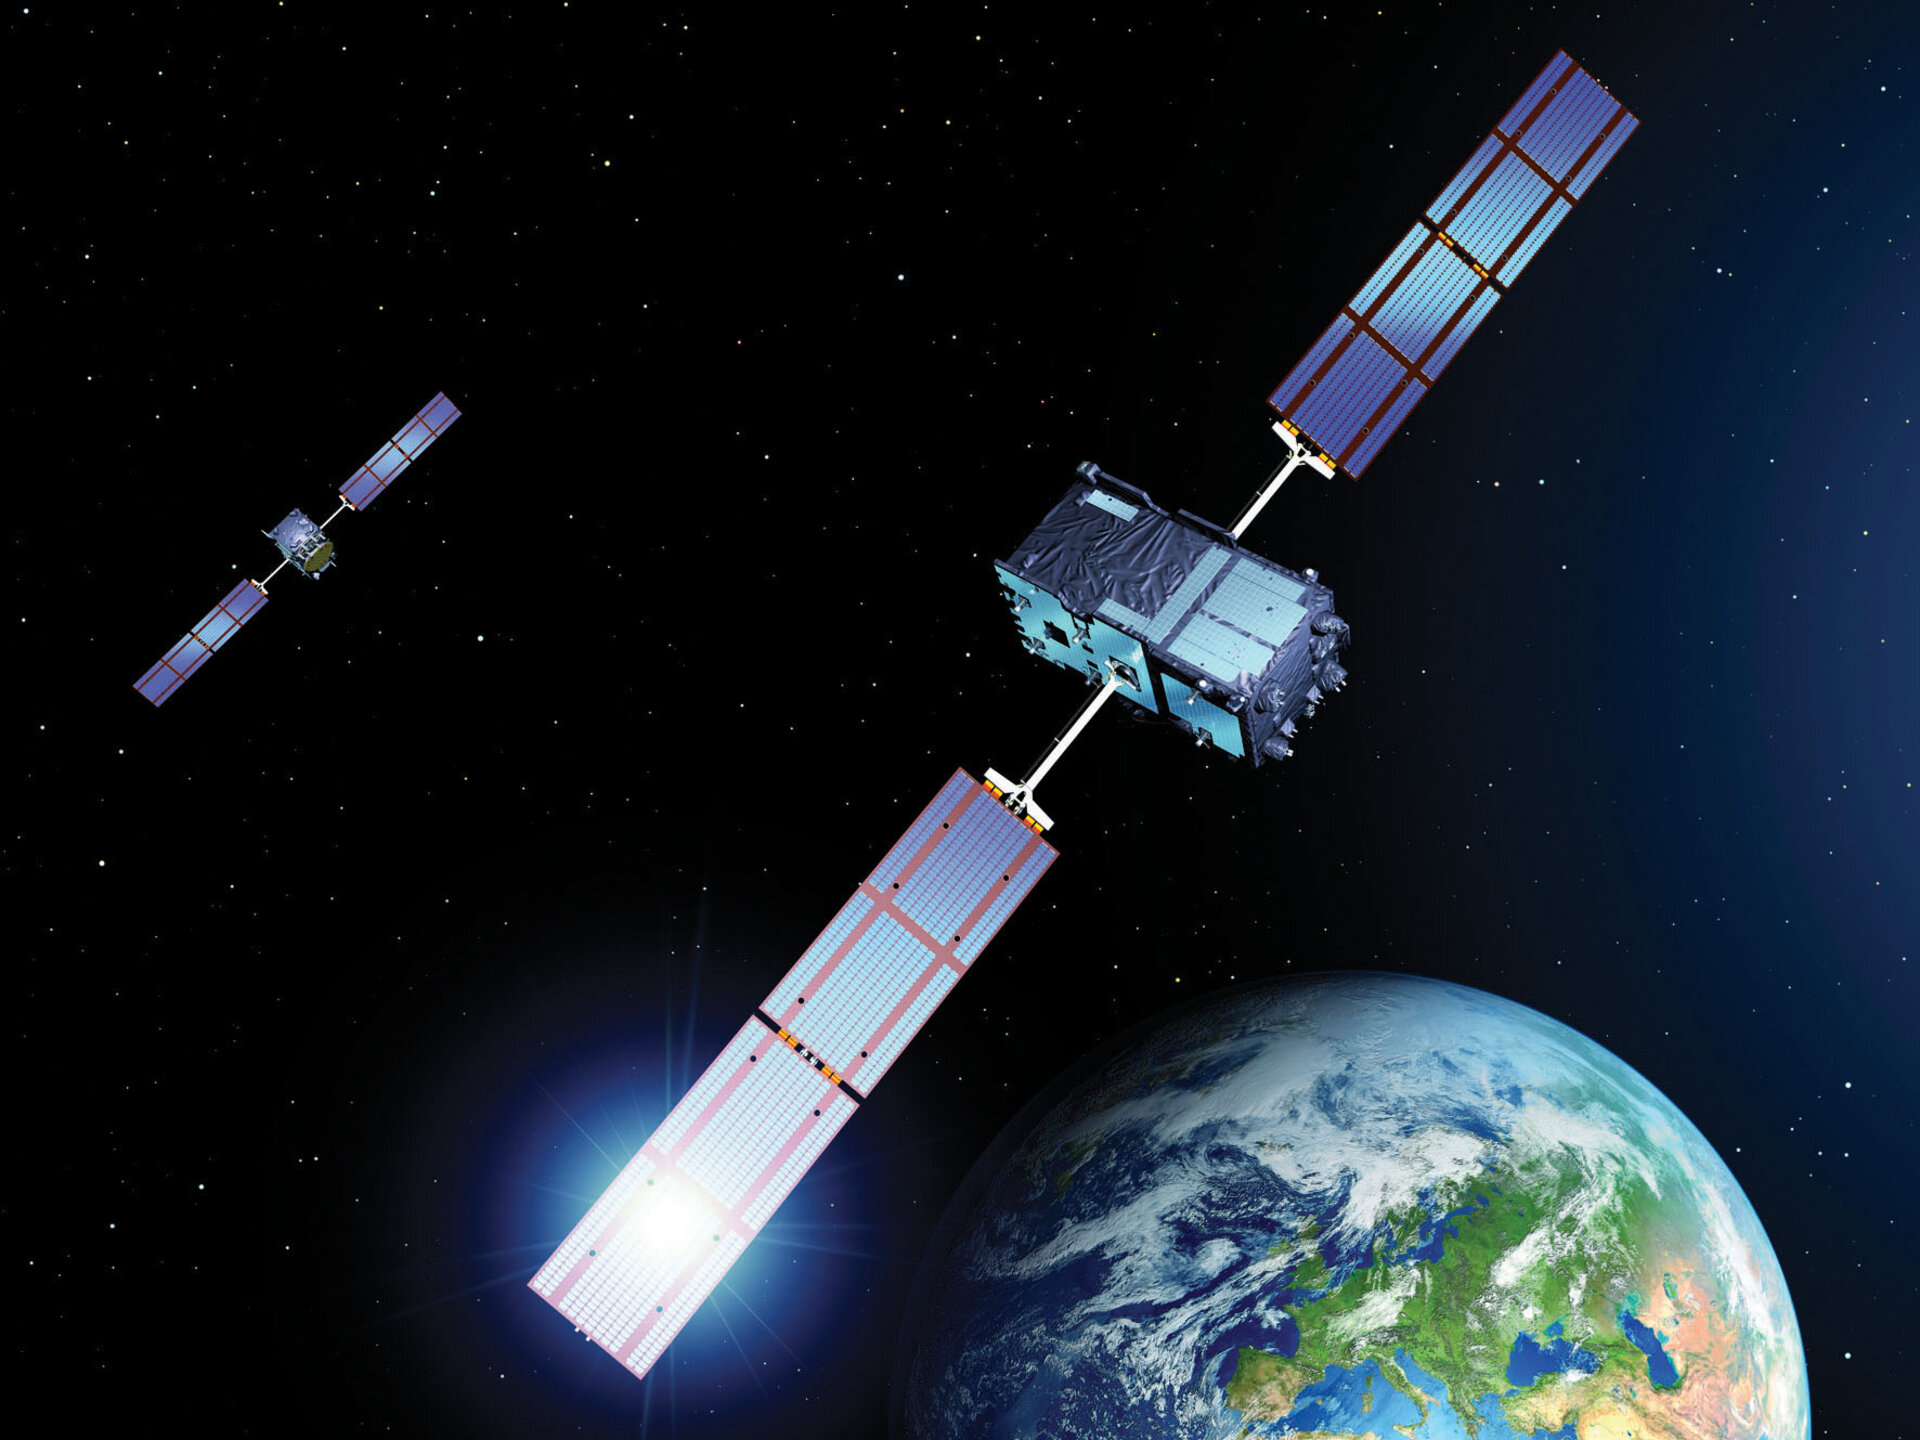 Das satellitenbasierte Navigationssystem Galileo